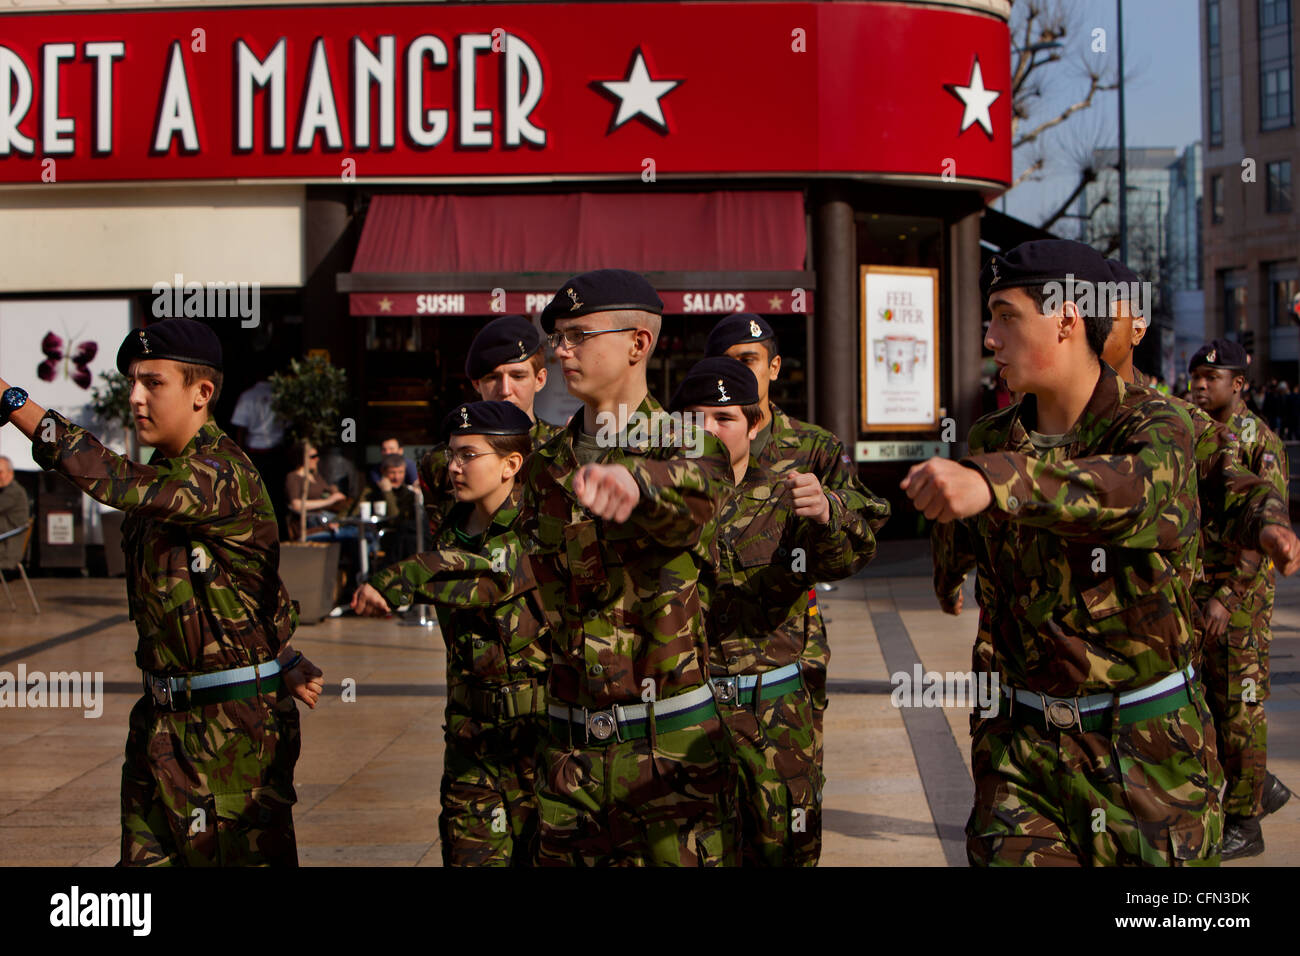 Tropas del Ejército Territorial Regimiento Royal Yeomanry marchando pasado "Pret A Manger" en Hammersmith Foto de stock